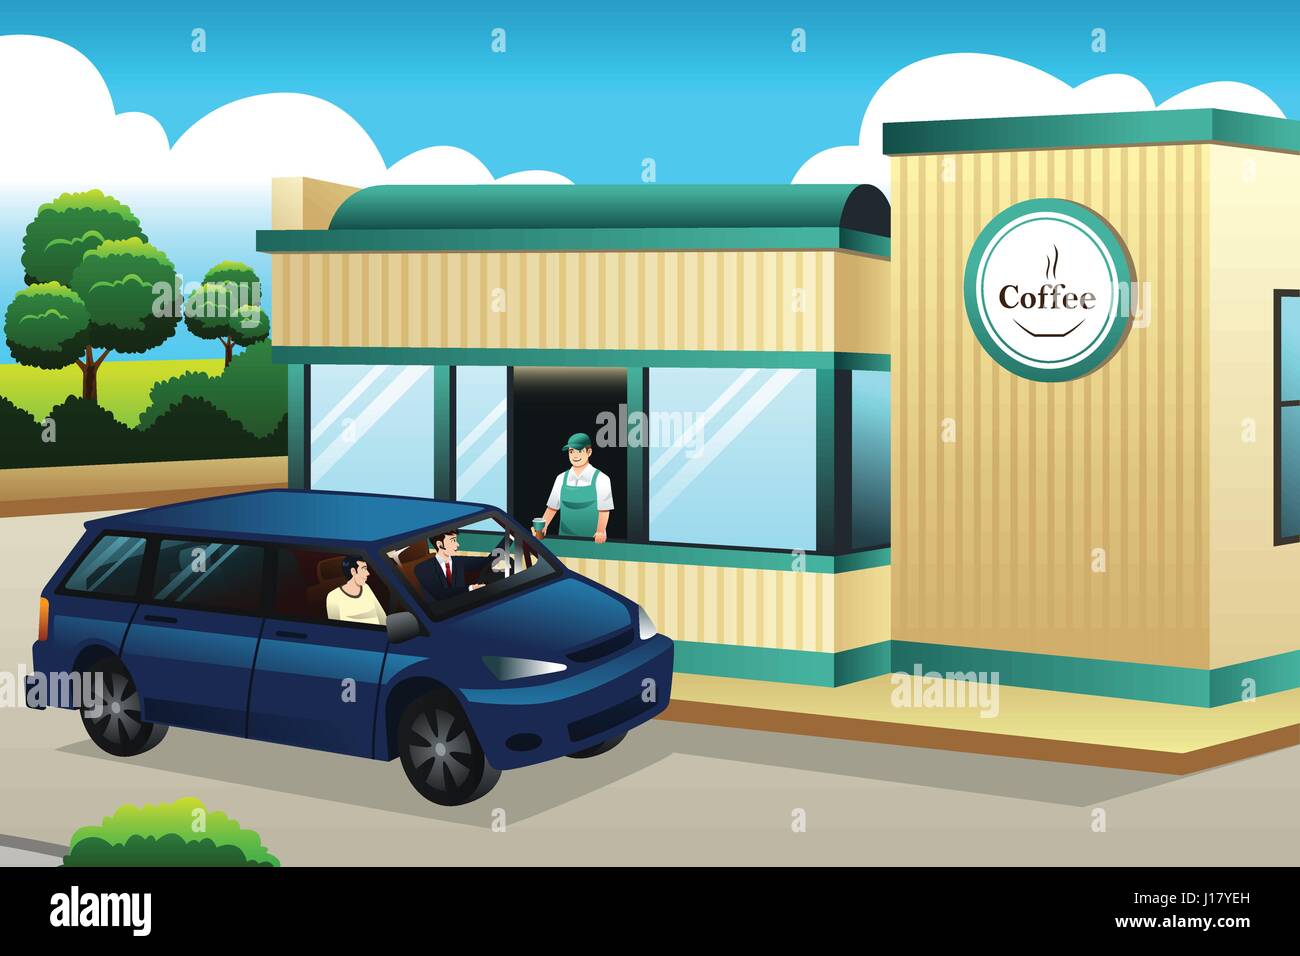 Un vecteur illustration de personnes qui achètent un café au drive-thru Coffee Shop Illustration de Vecteur